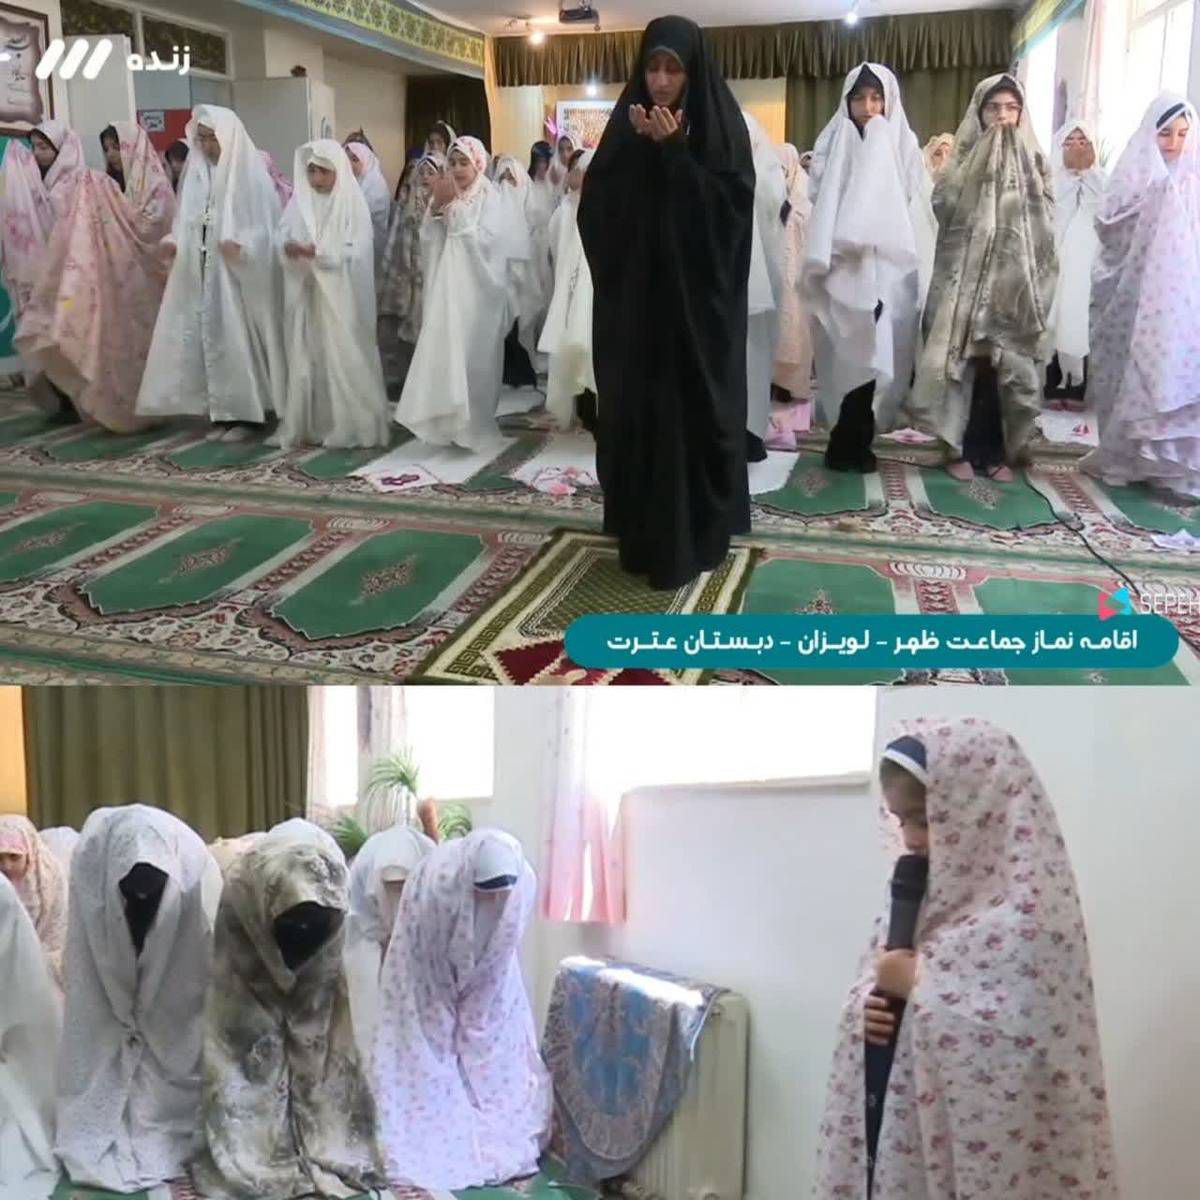  اقامه نماز به امامت یک خانم روی آنتن شبکه سه +عکس